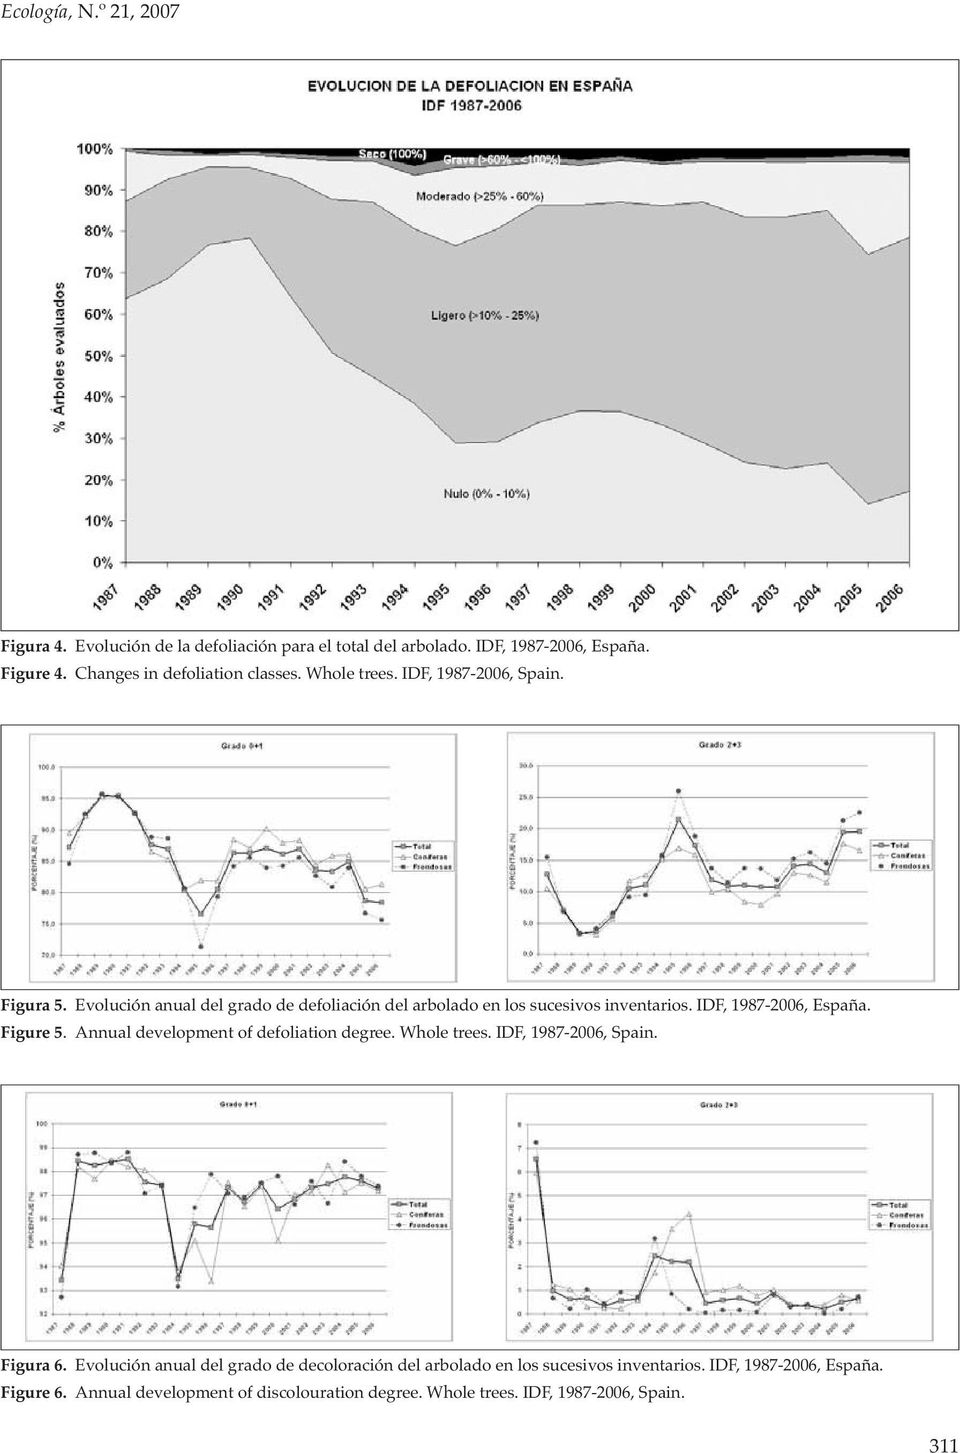 Evolución anual del grado de defoliación del arbolado en los sucesivos inventarios. IDF, 1987-2006, España. Figure 5.